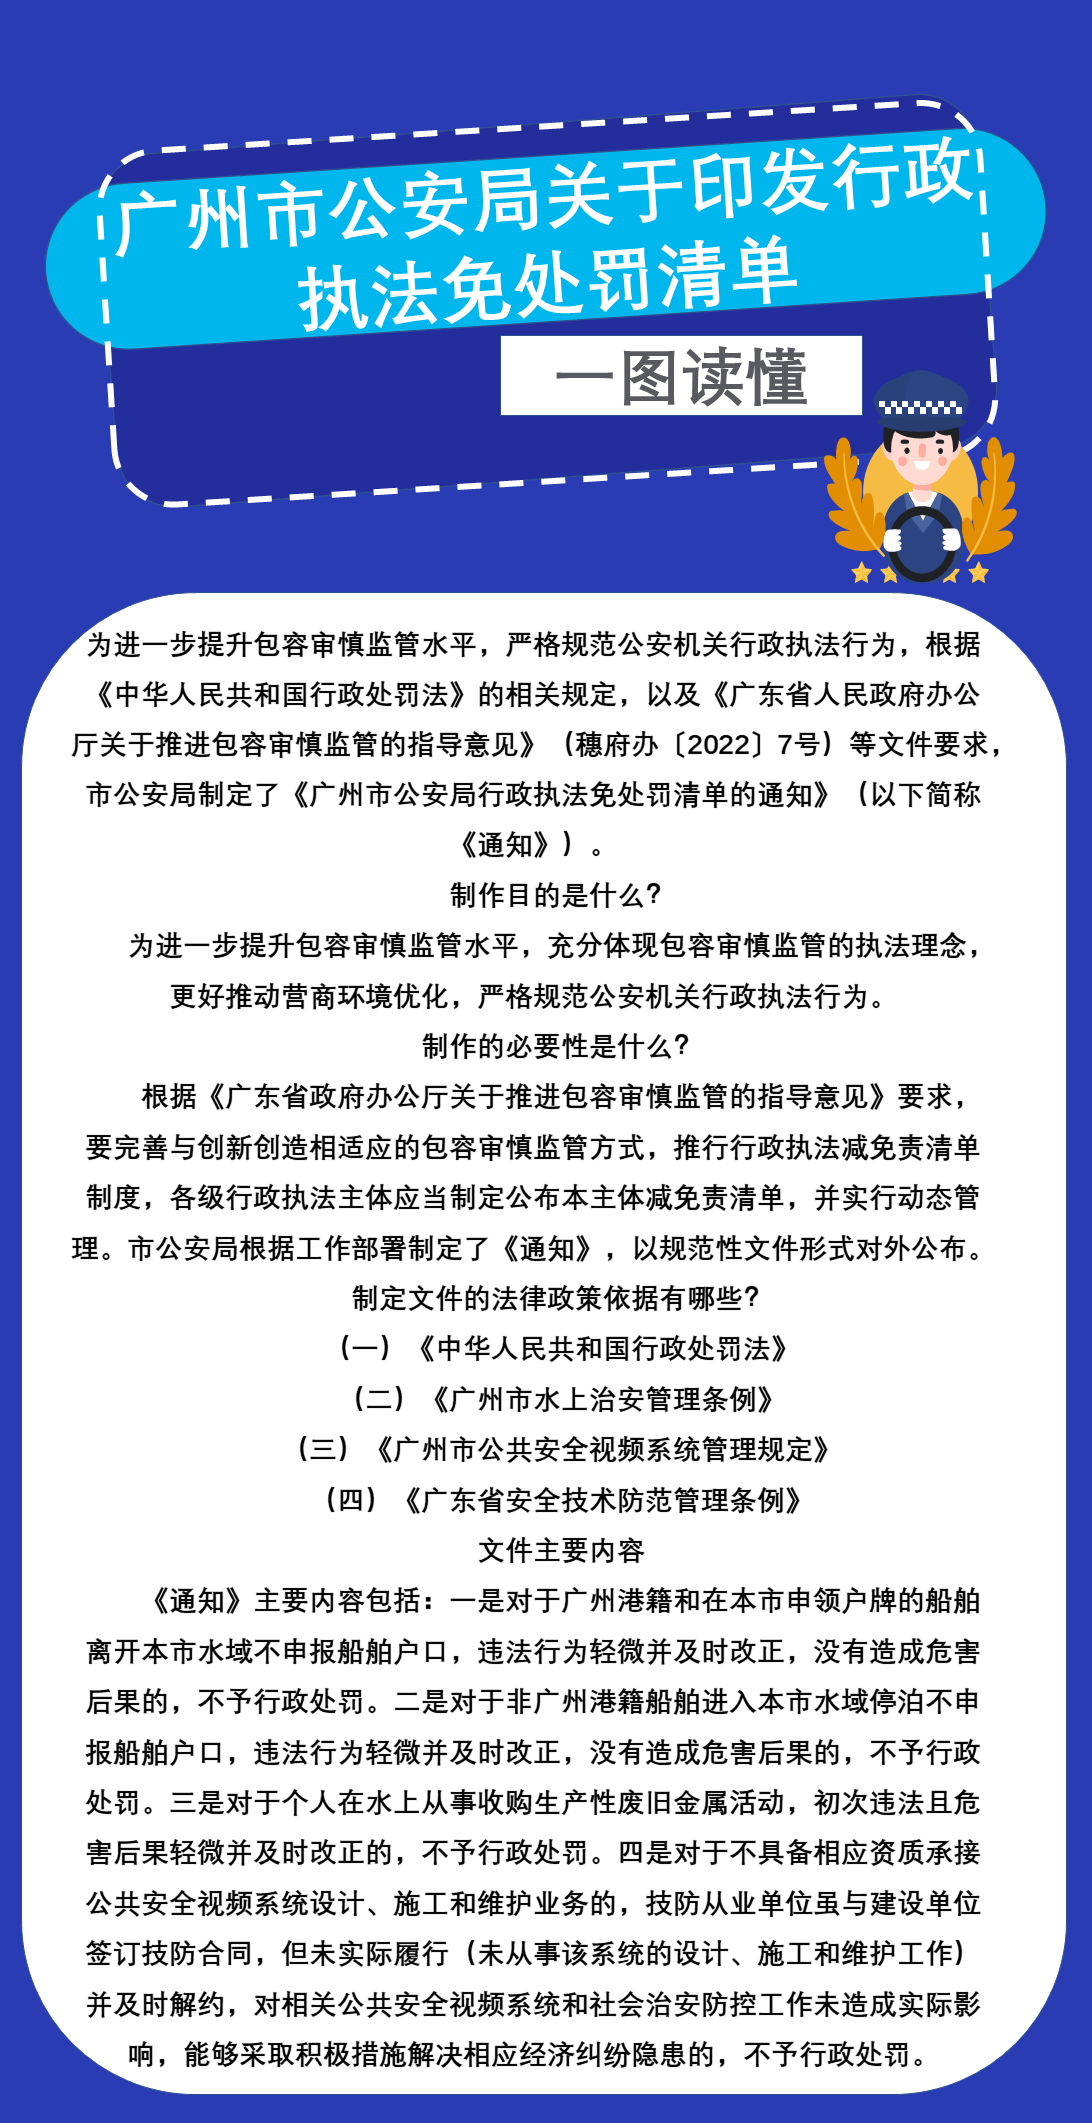 广州市公安局关于印发行政执法免处罚清单(2.0).png